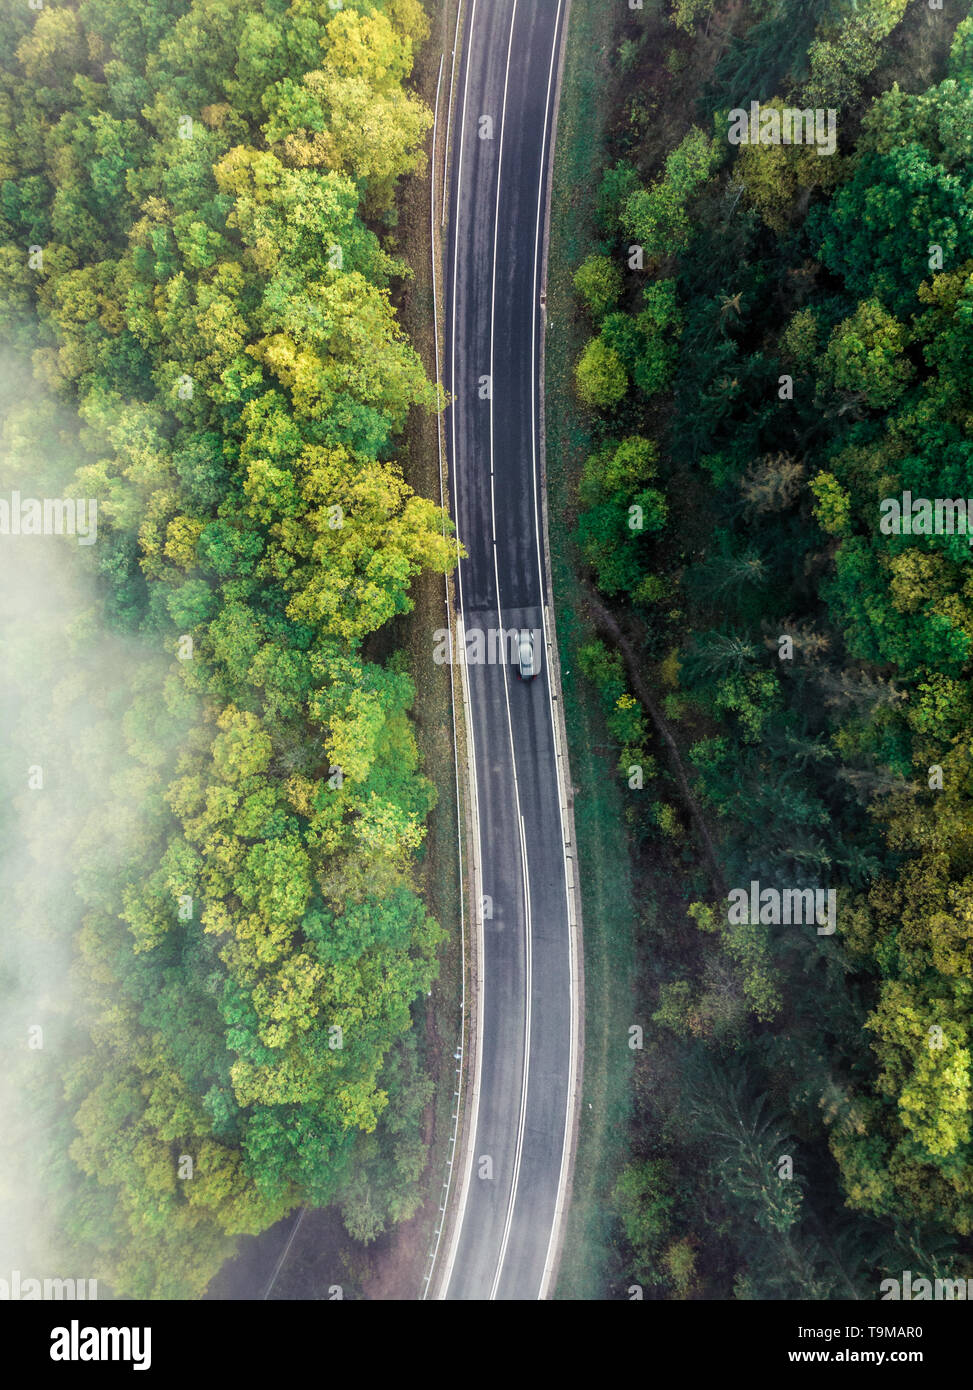 Vue aérienne d'une route de montagne couvertes dans le brouillard à l'intérieur d'un jardin luxuriant et une voiture conduite forrest comme repéré par le haut avec un bourdon (Allemagne, Europe) Banque D'Images